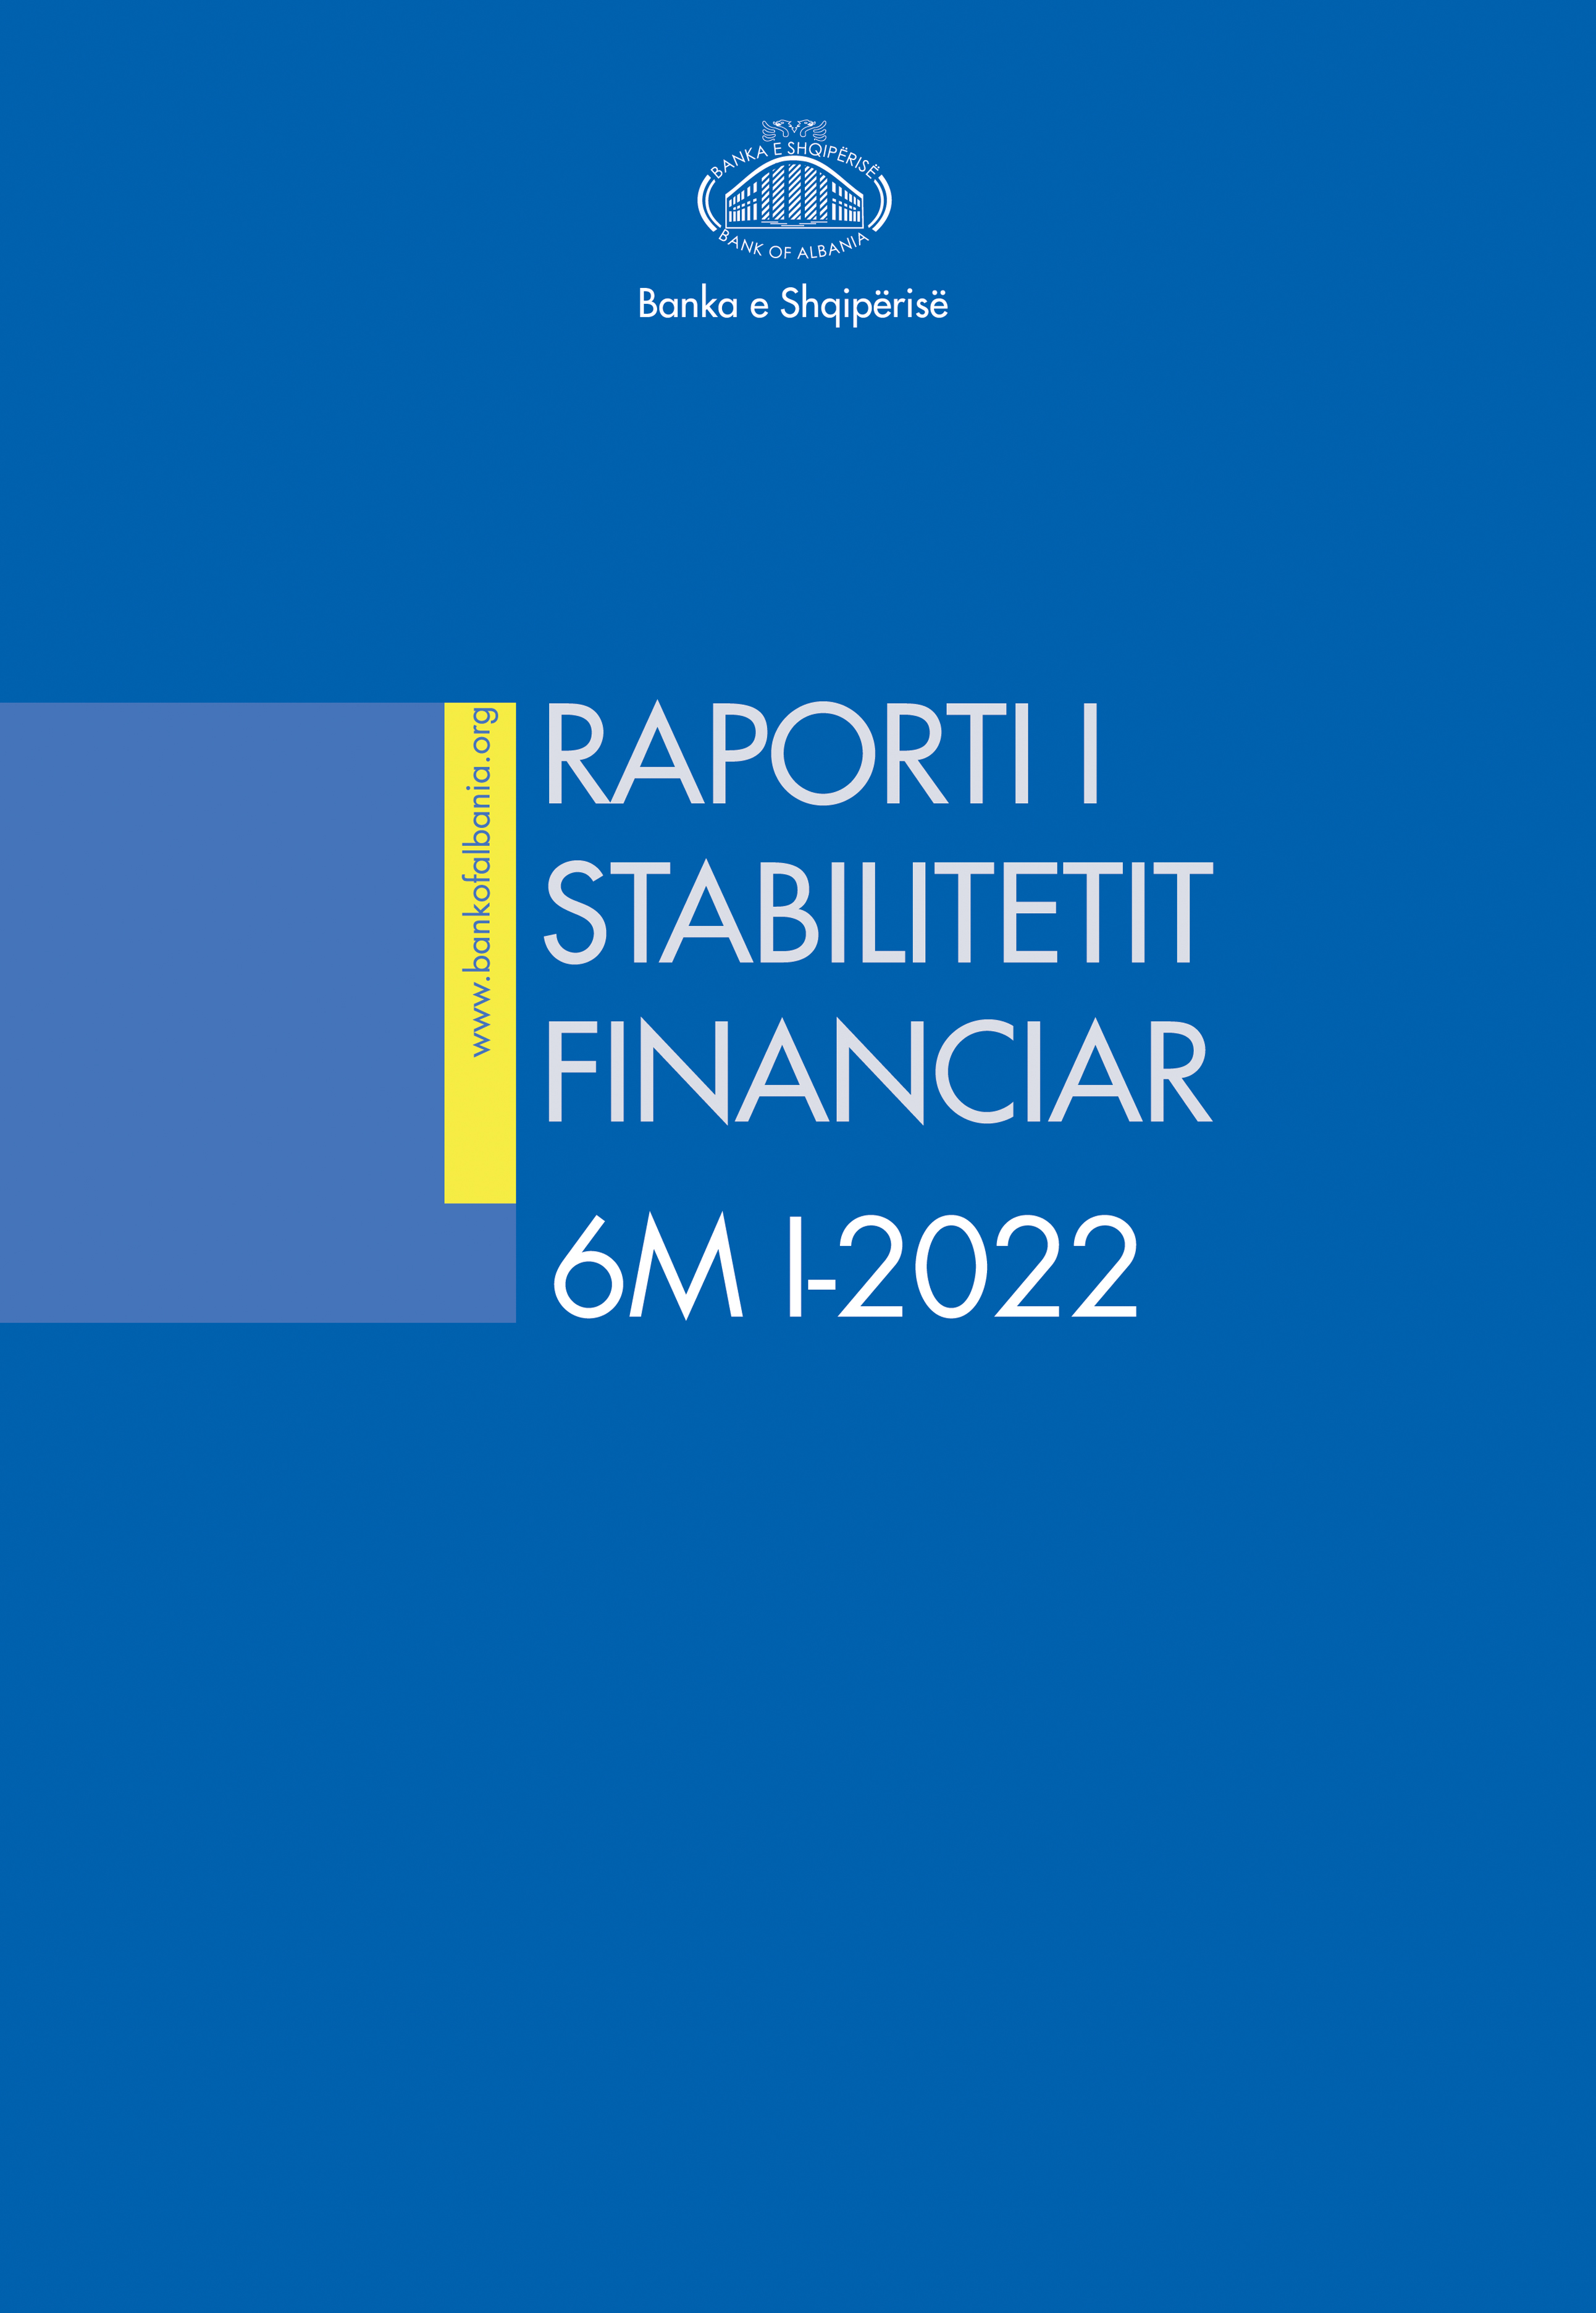 Raporti i Stabilitetit Financiar për gjashtëmujorin e parë të vitit 2022